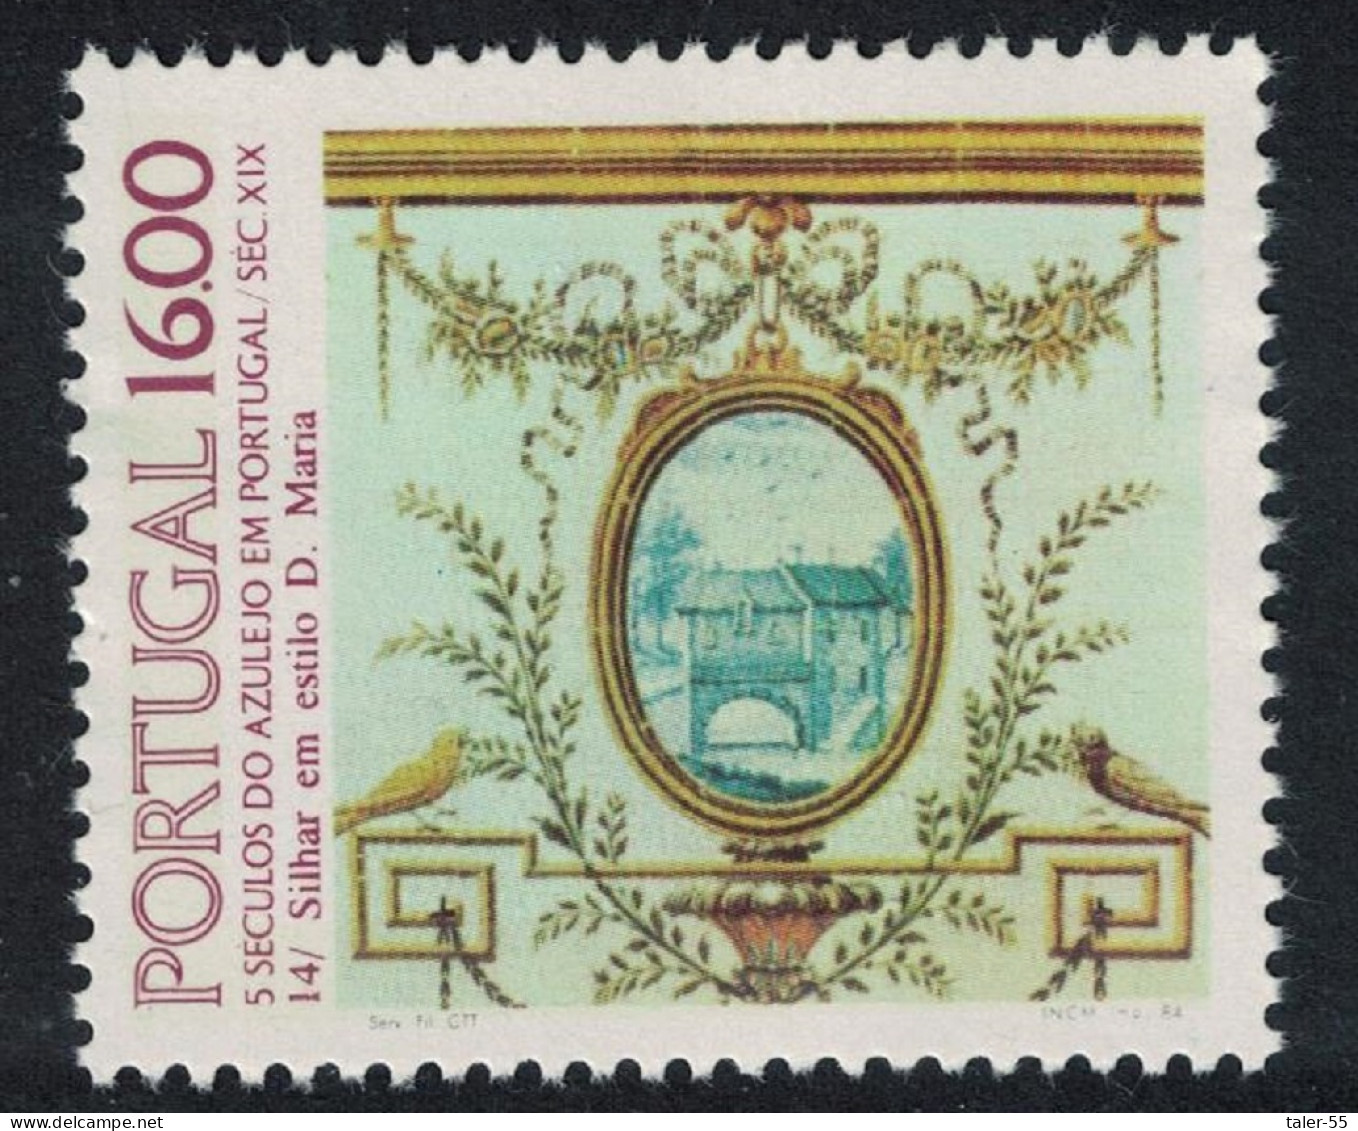 Portugal Tiles 14th Series 1984 MNH SG#1970 - Ungebraucht